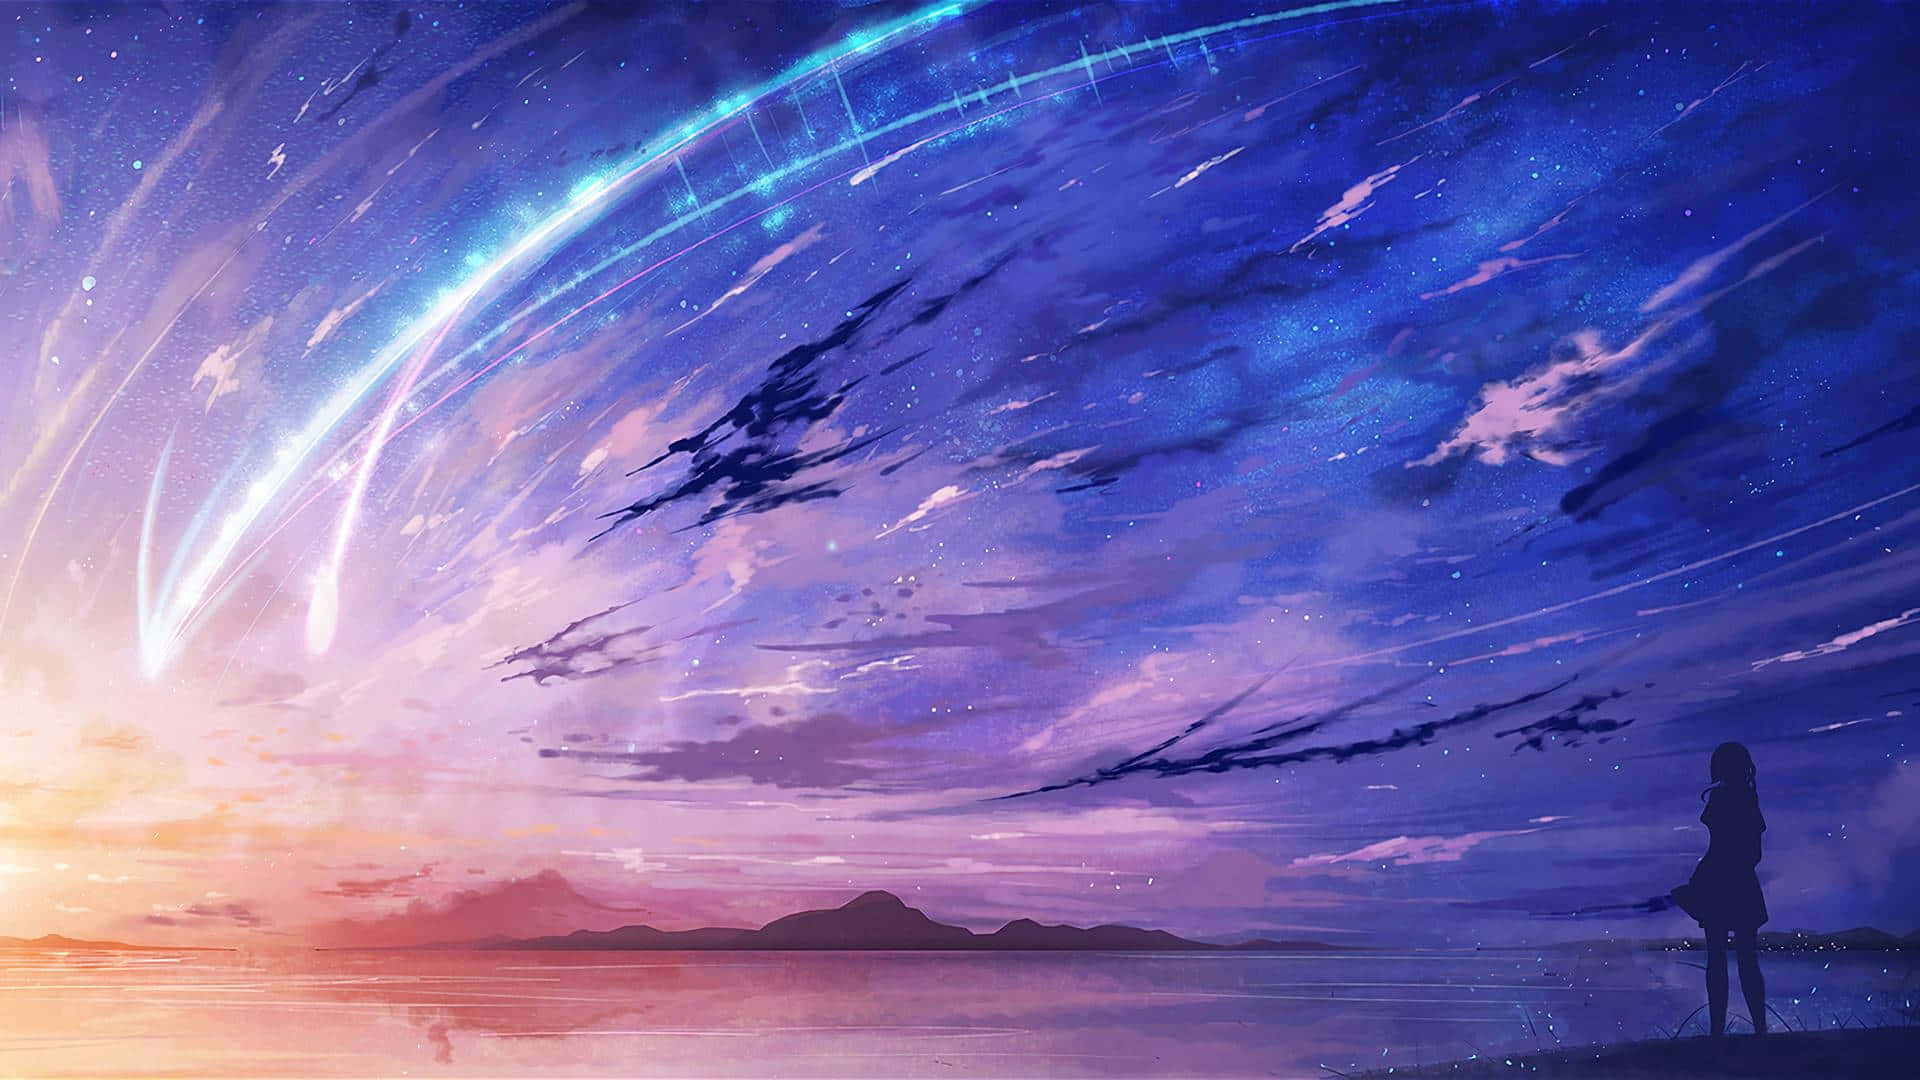 Friedlichersee Unter Den Sternen In Einer Wunderschönen Anime-inspirierten Szenerie Wallpaper